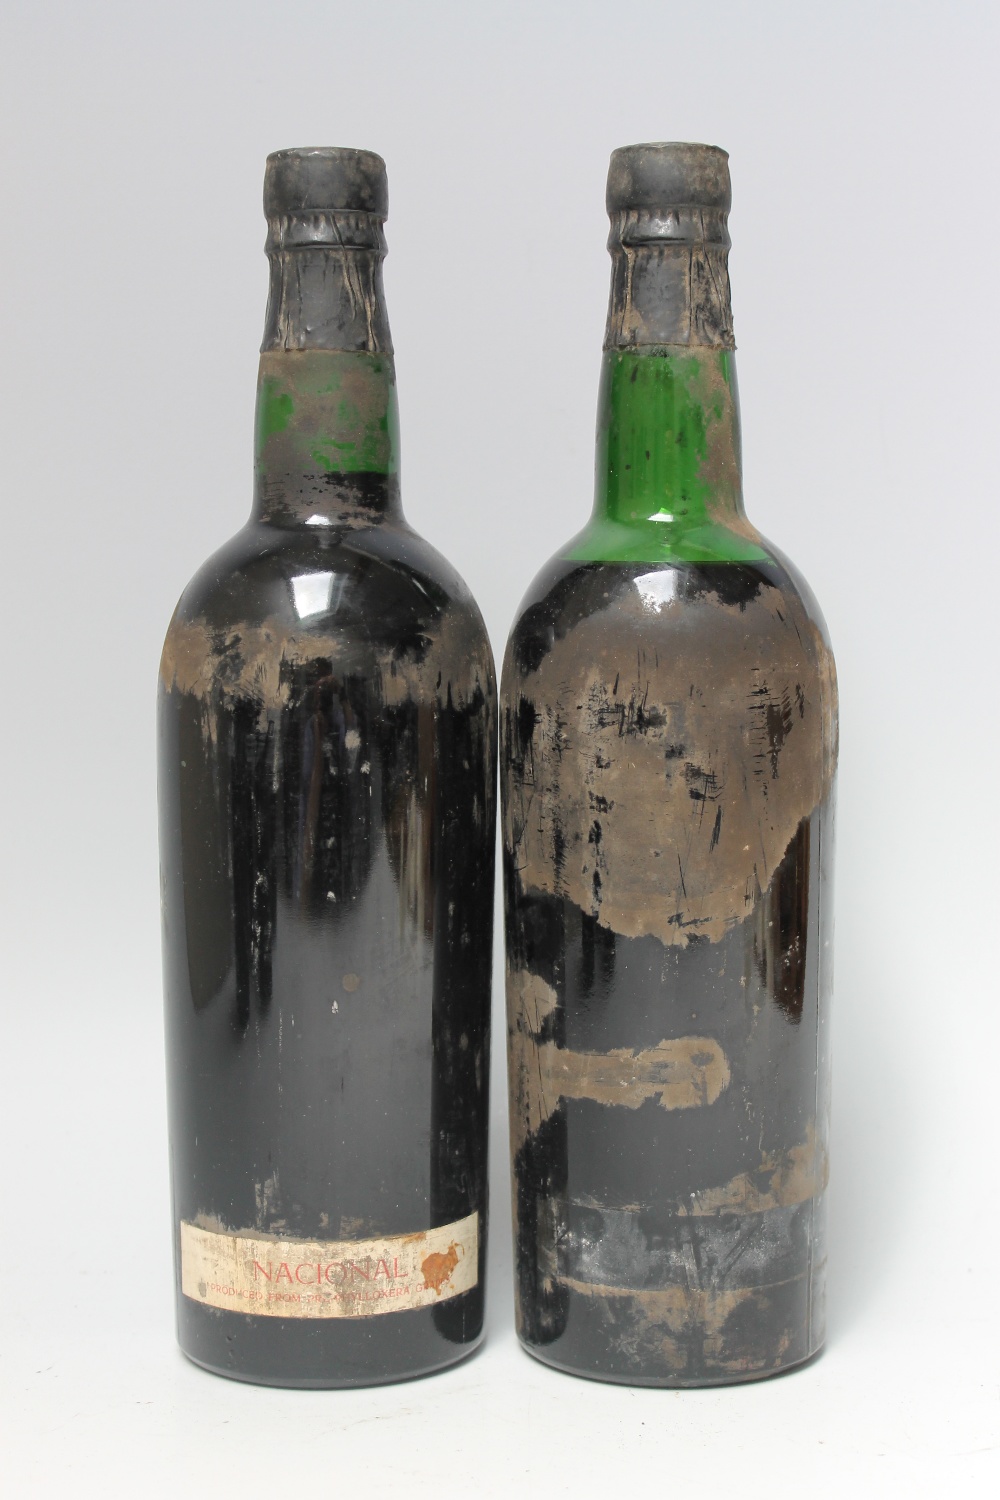 2 BOTTLES OF NOVAL NACIONAL VINTAGE PORT 1966, labels absent, bottle A in neck, bottle B top